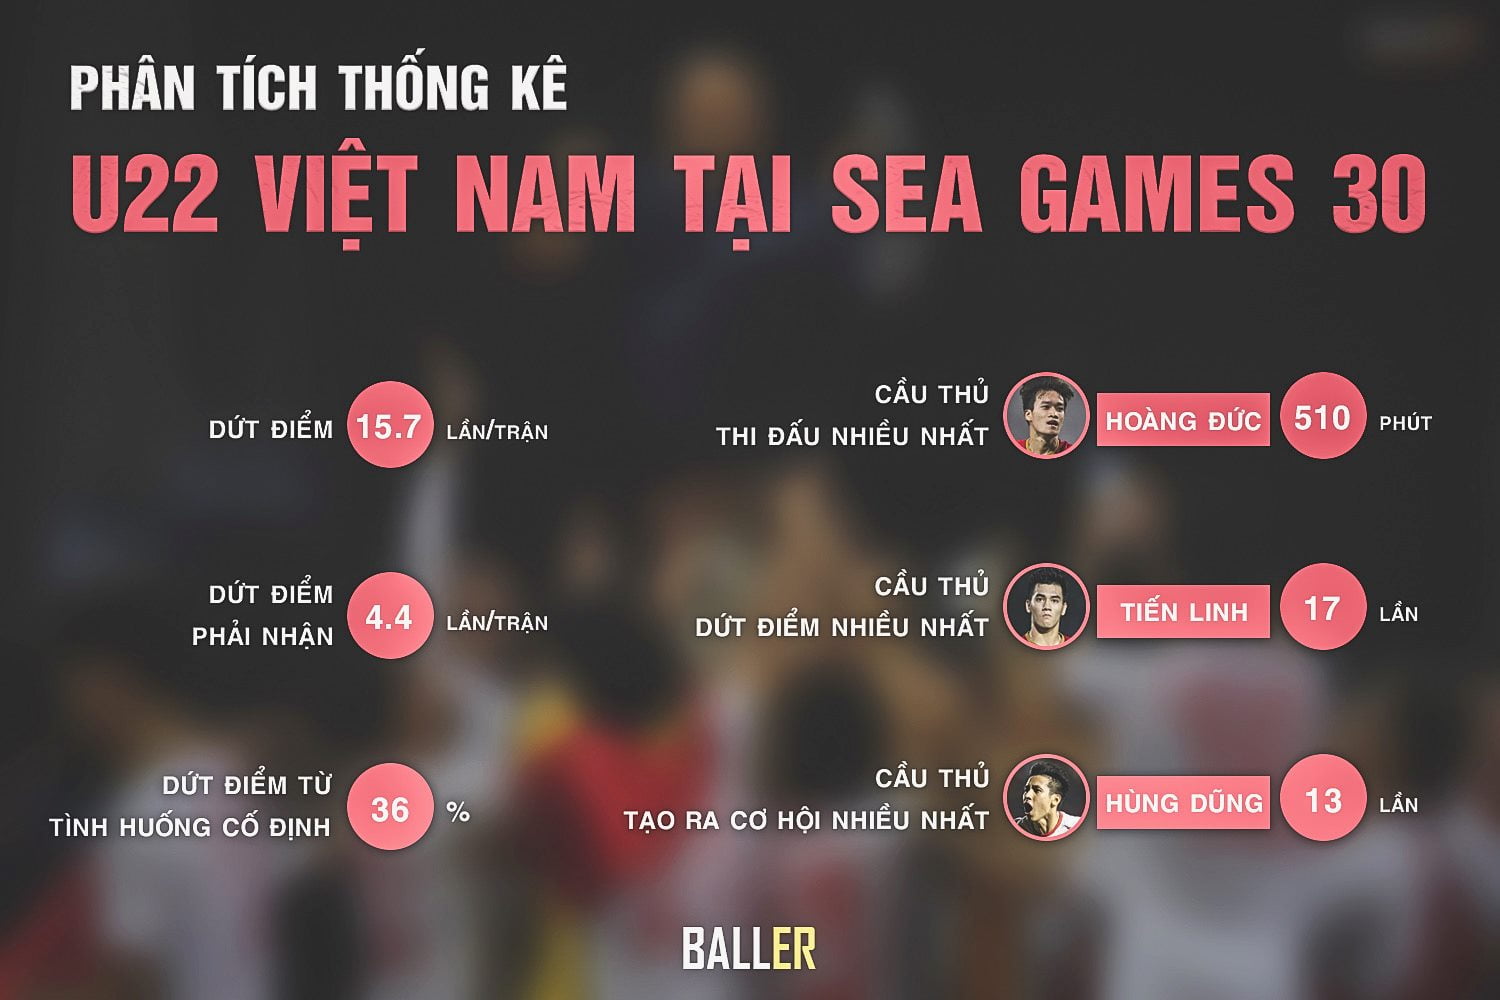 Phân tích thống kê U22 Việt Nam tại Sea Games 30